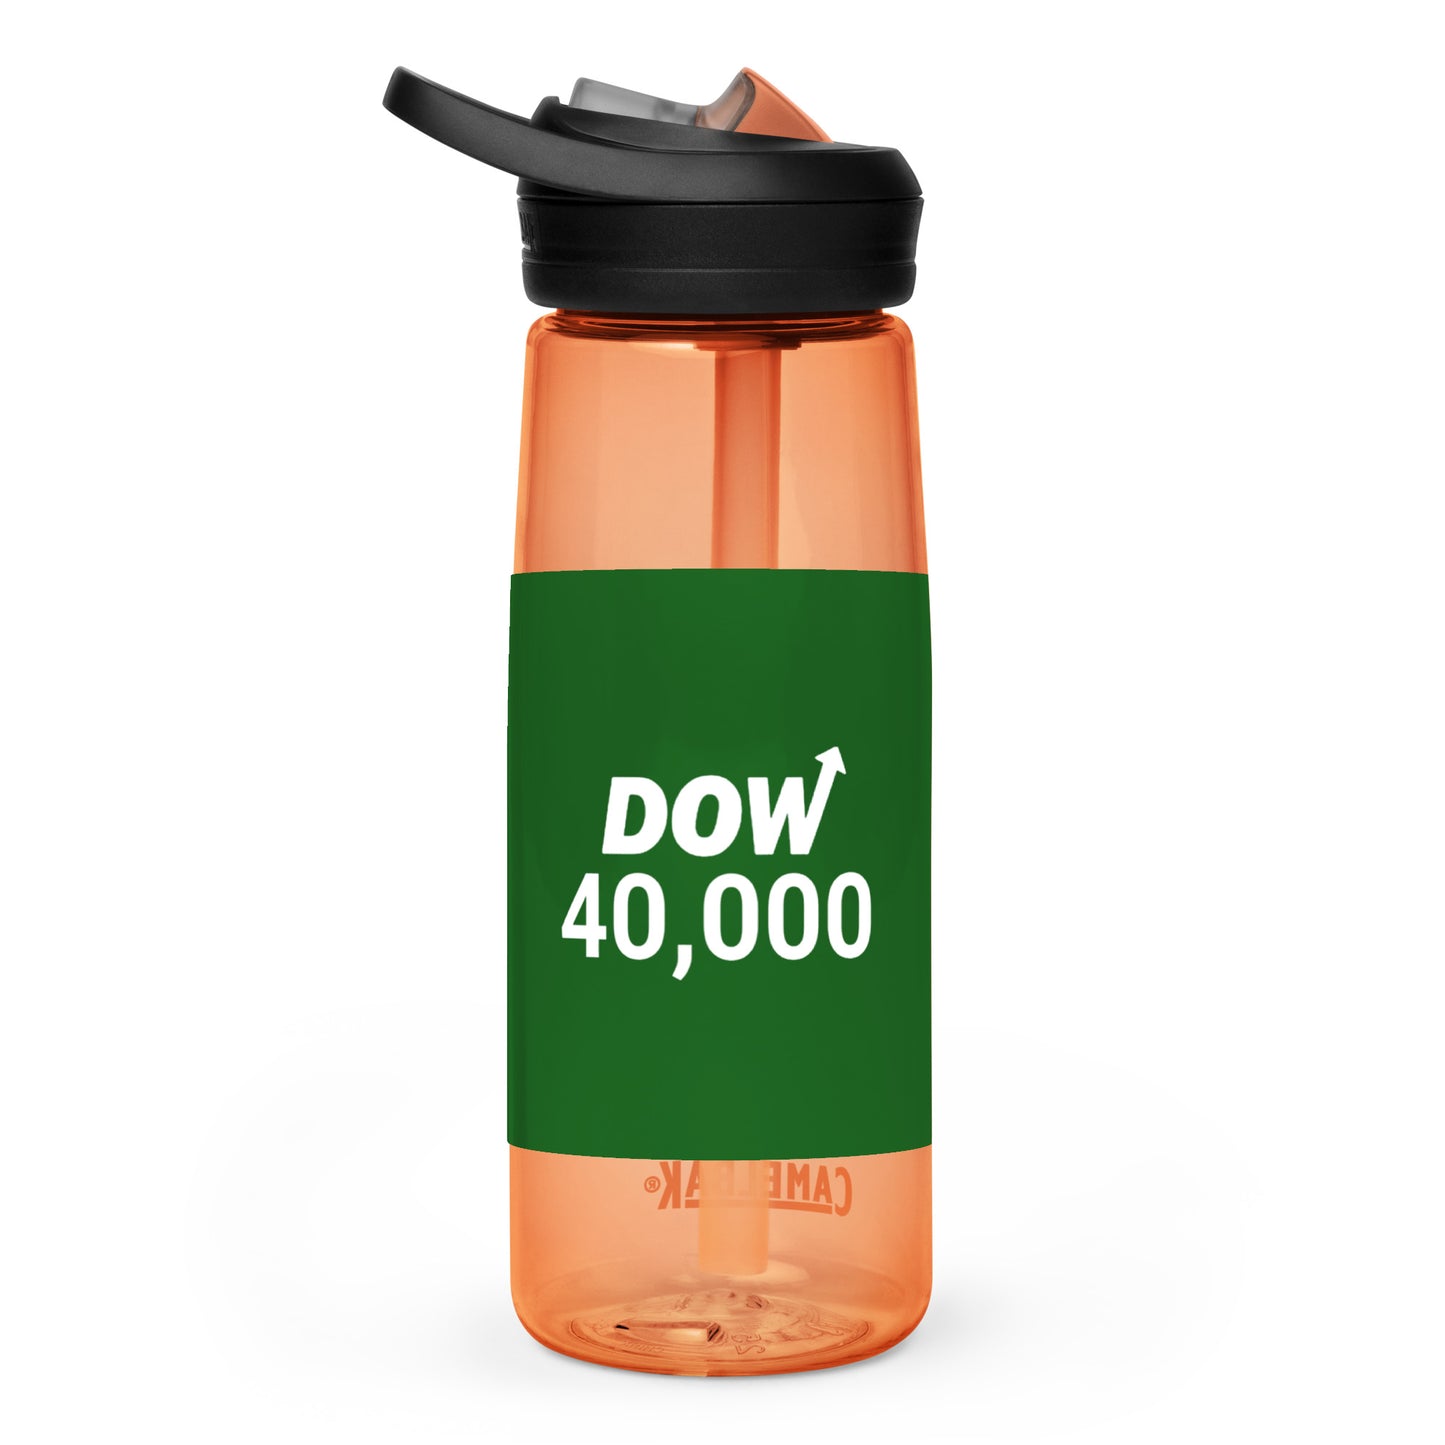 Dow 40.000 Sports water bottle / Dow 40k Sports water bottle